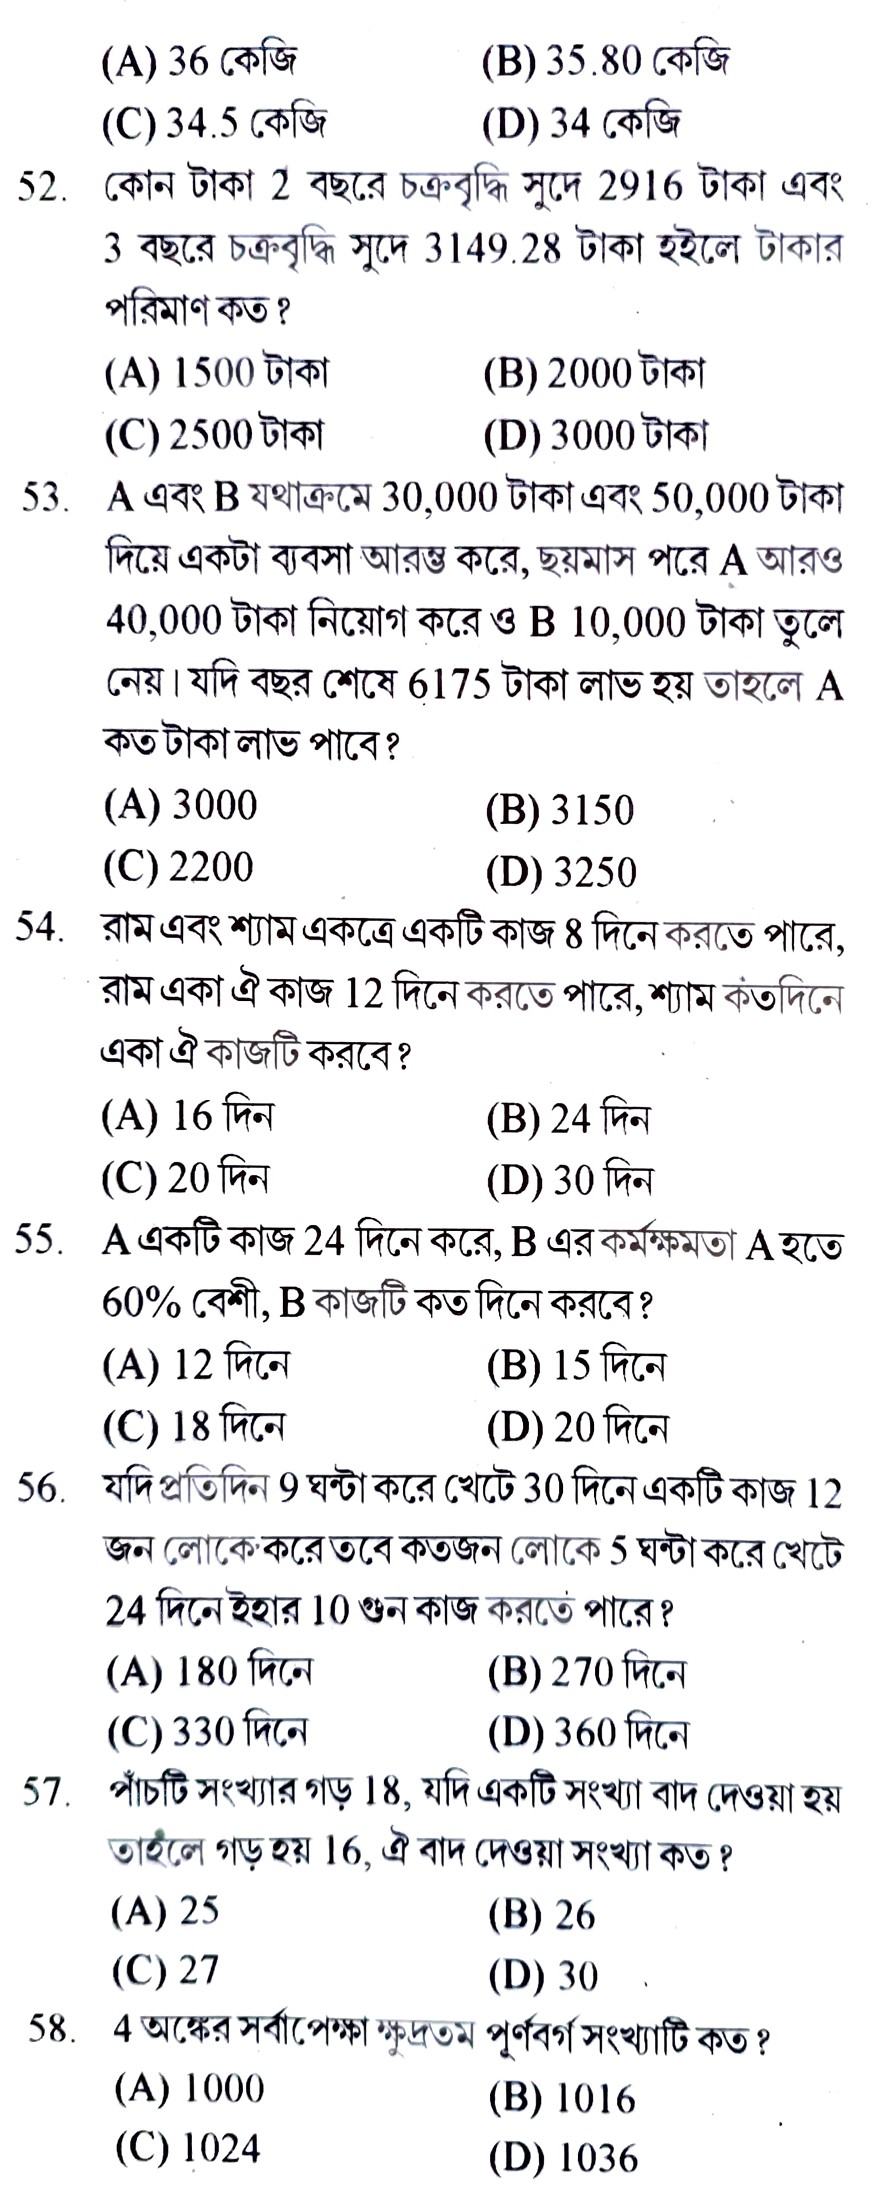 ফুড সাব ইন্সপেক্টর ৫০ টি জেনারেল স্টাডিজ ও ৫০ টি অ্যারিথমেটিক প্রাকটিস সেট পিডিএফ ||Food SI General Studies and Arithmetic Practice Set Pdf in Bengali